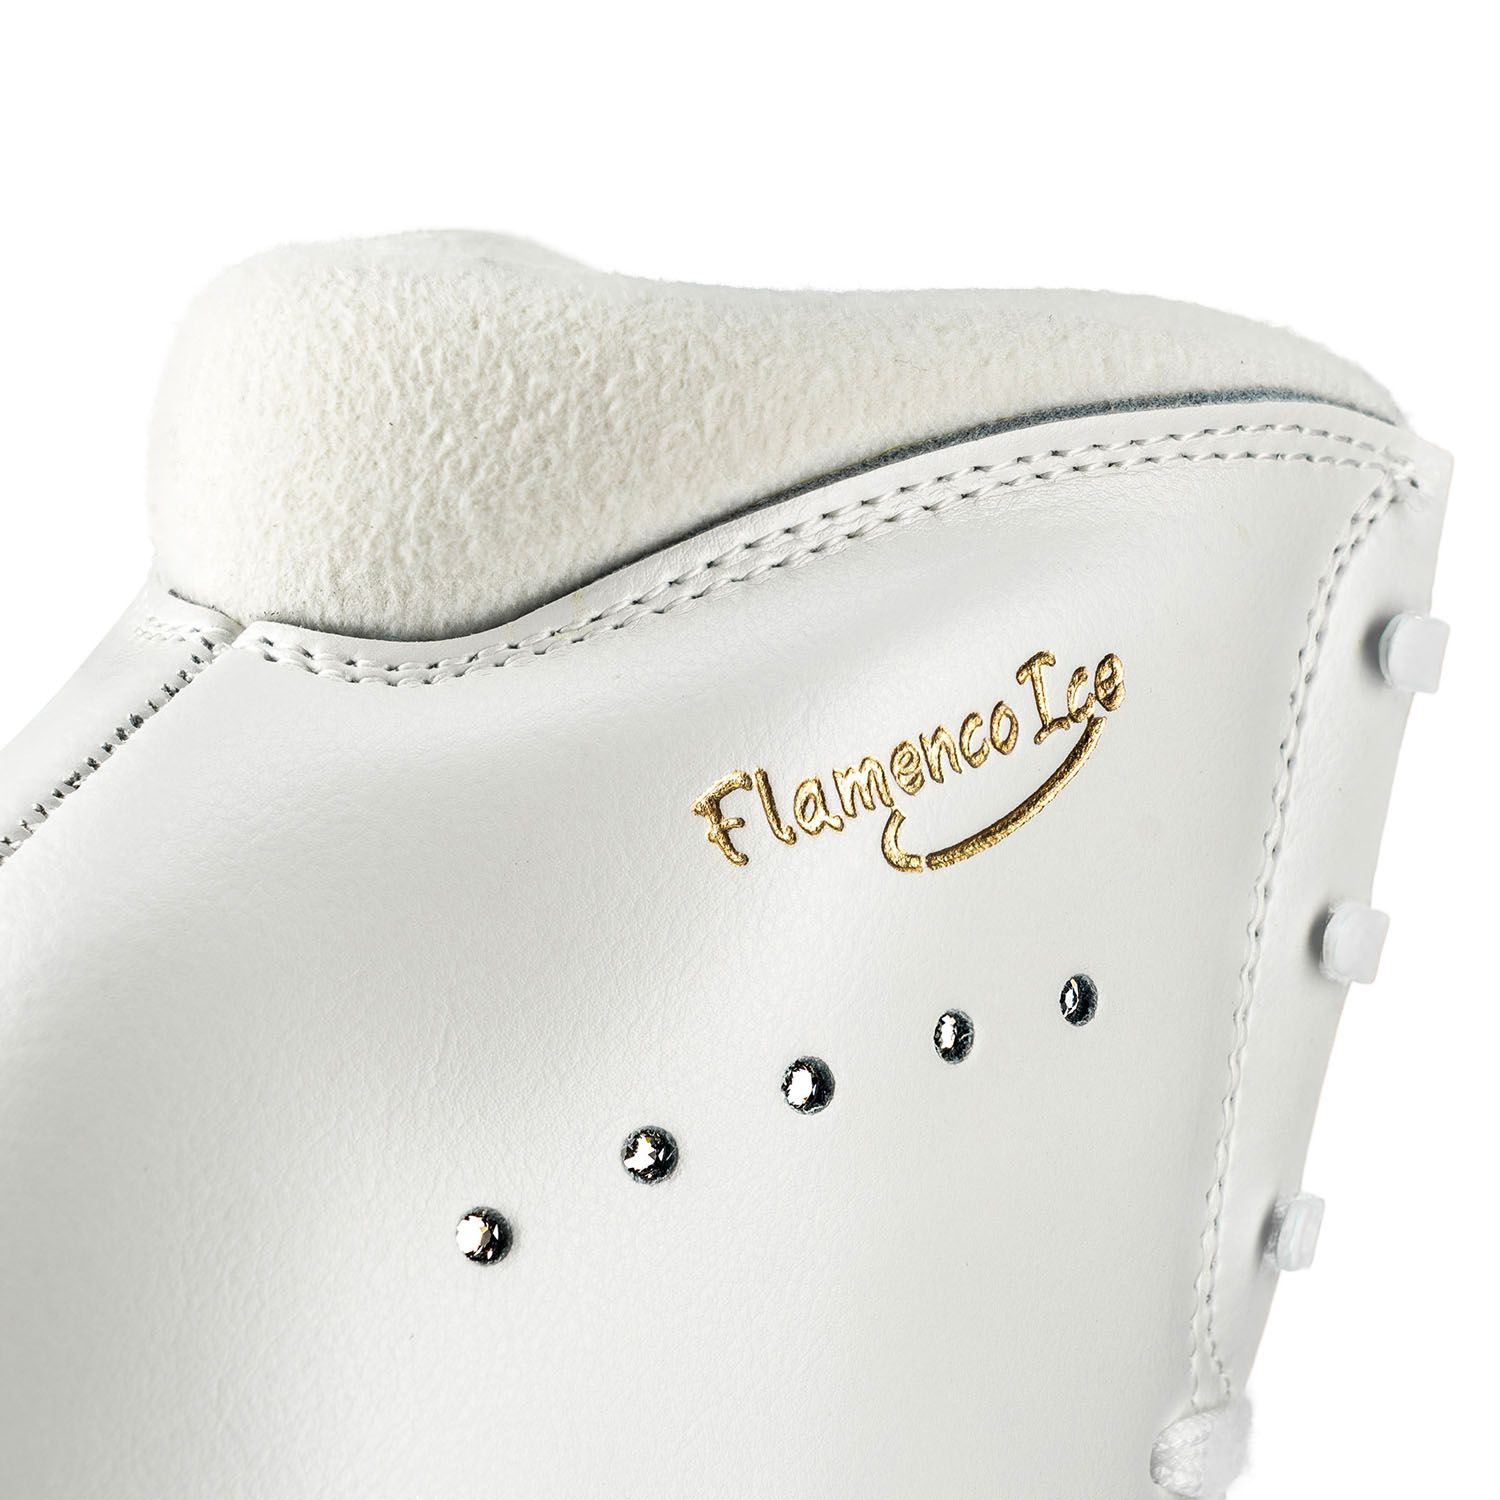 Фигурные ботинки Edea Flamenco (Белые)